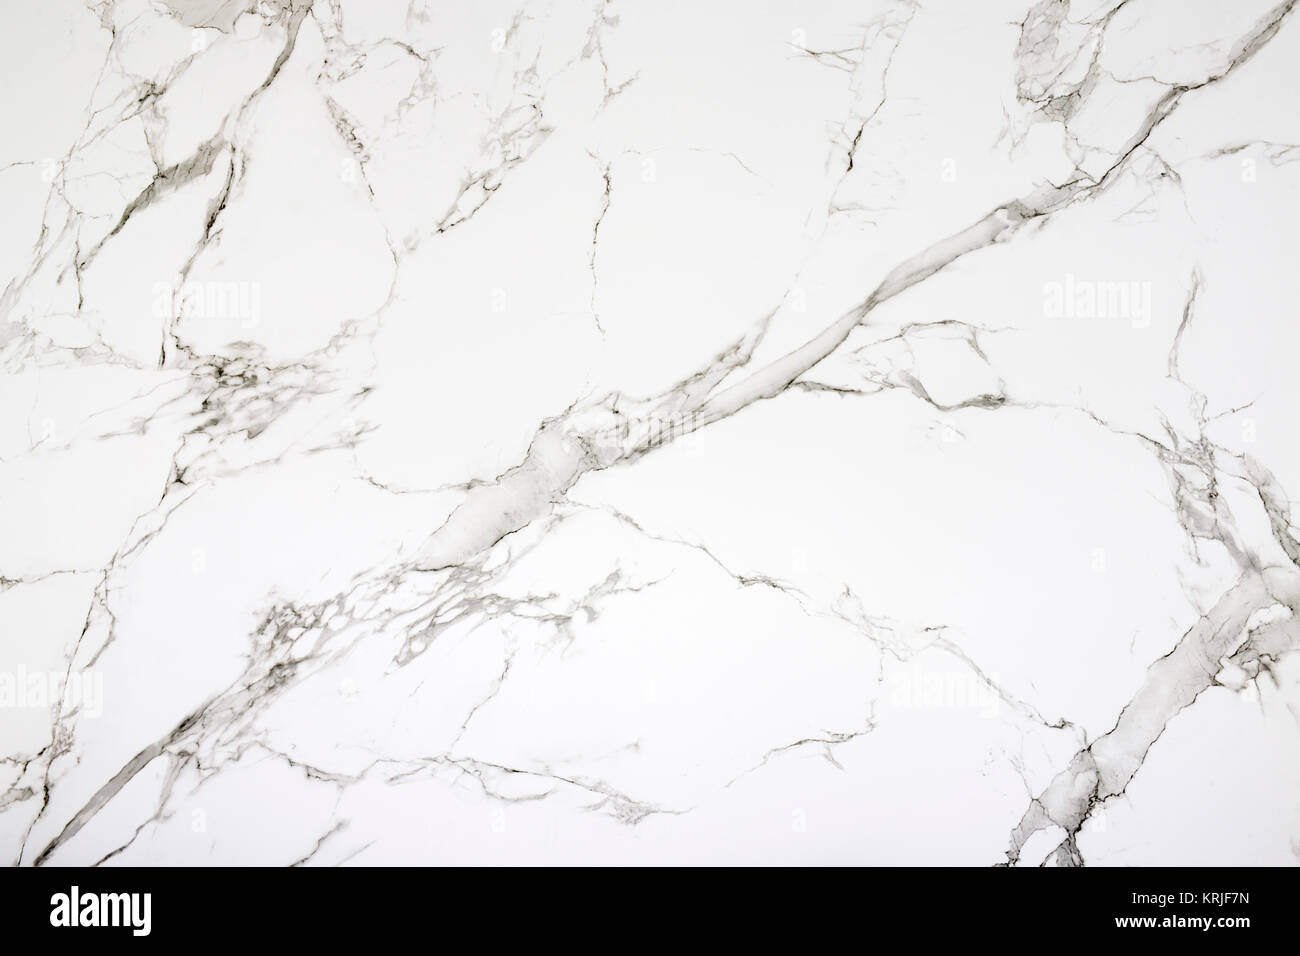 Eine große Tafel von weißem Marmor (6.56 x 4.26 m). Plaque de marbre Blanc de Grande Dimension (2m x 1,3m). Stockfoto